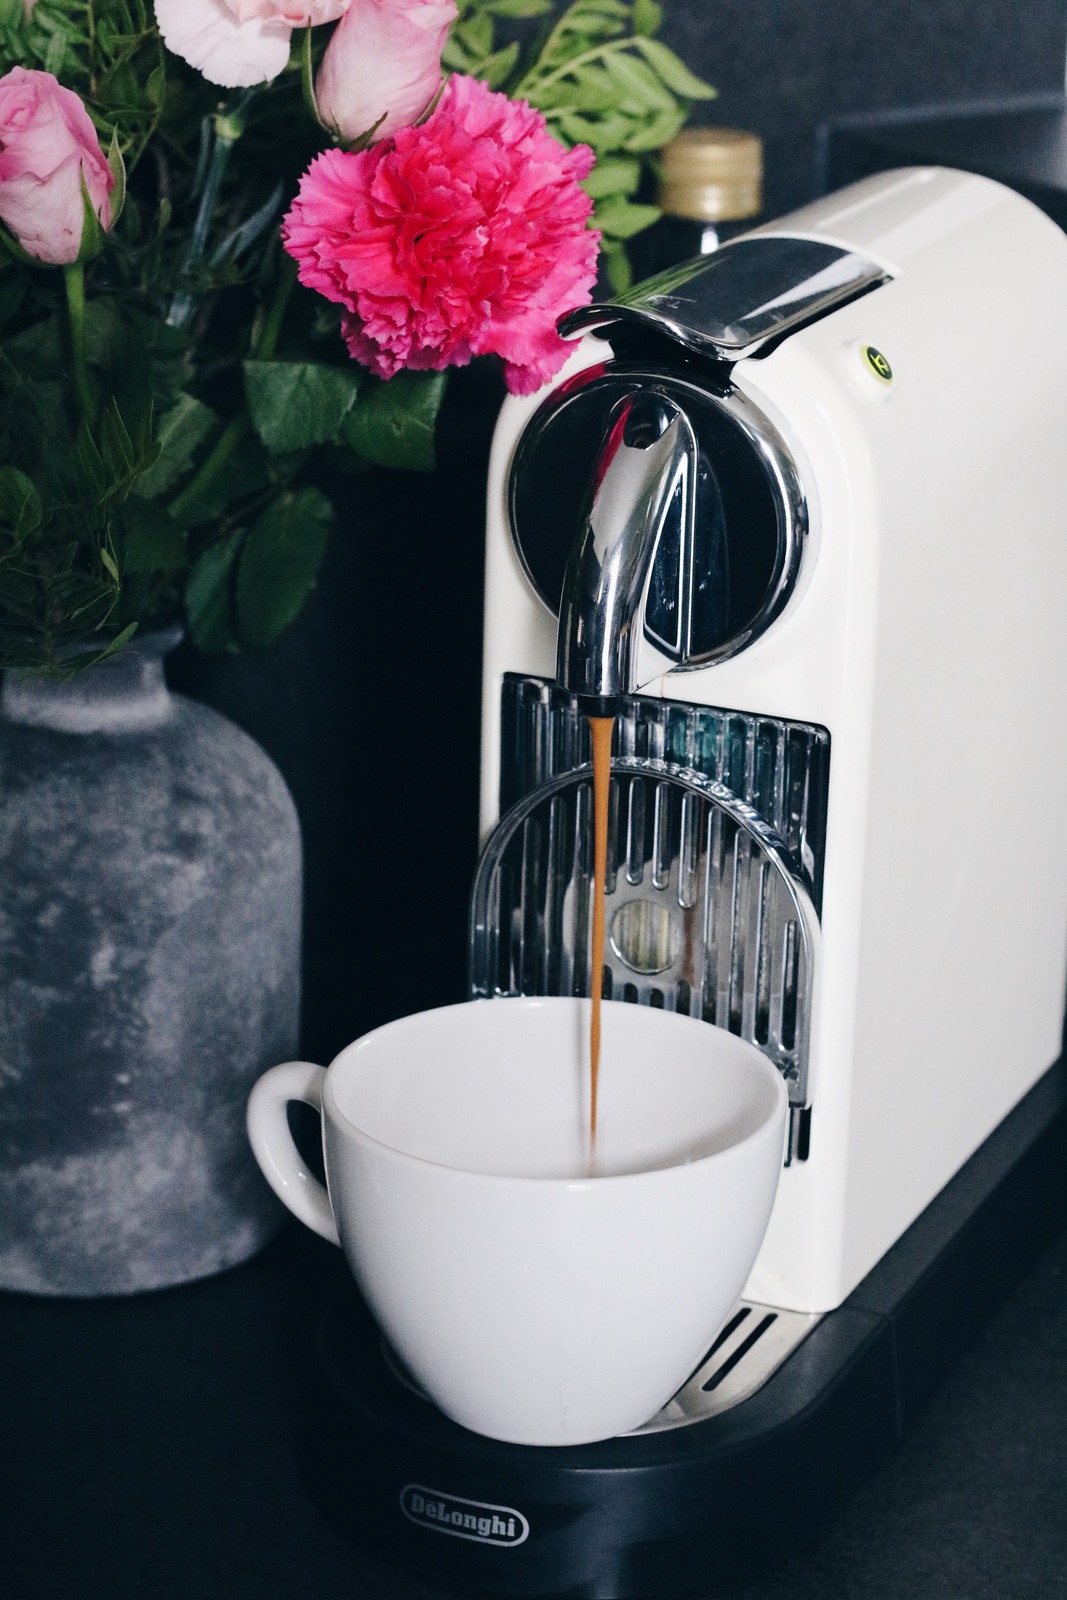 Jacobs Kaffee Kaffeekapseln Aluminium Test Blogger Erfahrungsbericht Review Mrs. Brightside Rosavivi Blog